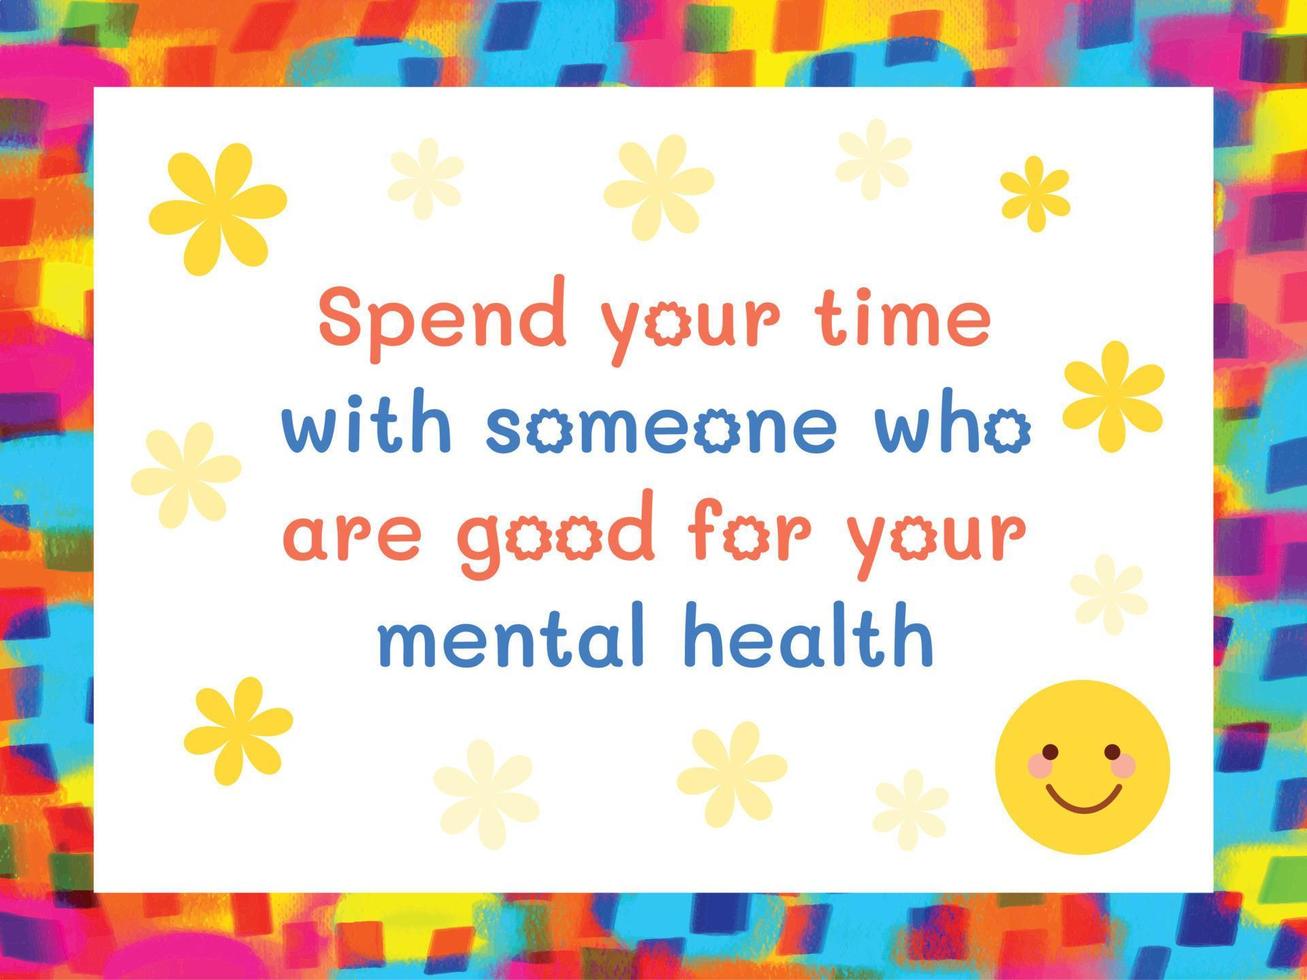 besteden uw tijd met iemand wie zijn mooi zo voor uw mentaal Gezondheid. leven advies en motivatie achtergrond tekst citaten met kleurrijk behang. bericht met glimlach emoji en geel bloemen decoratie. vector